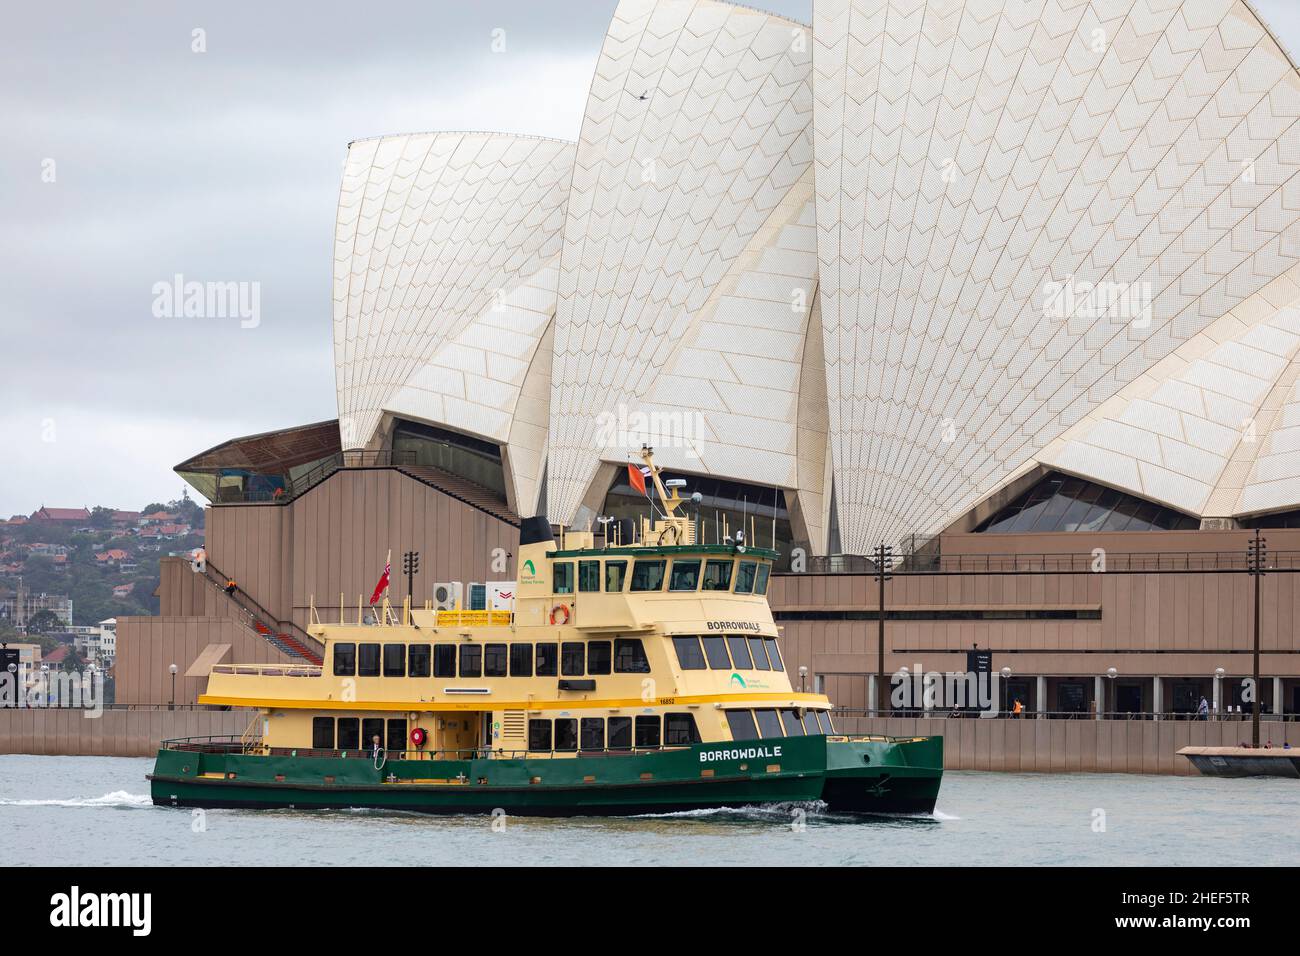 Ferry de primera clase de la flota de Sídney El MV Borrowdale pasa por la Ópera de Sídney, Australia en un día de verano nublado Foto de stock